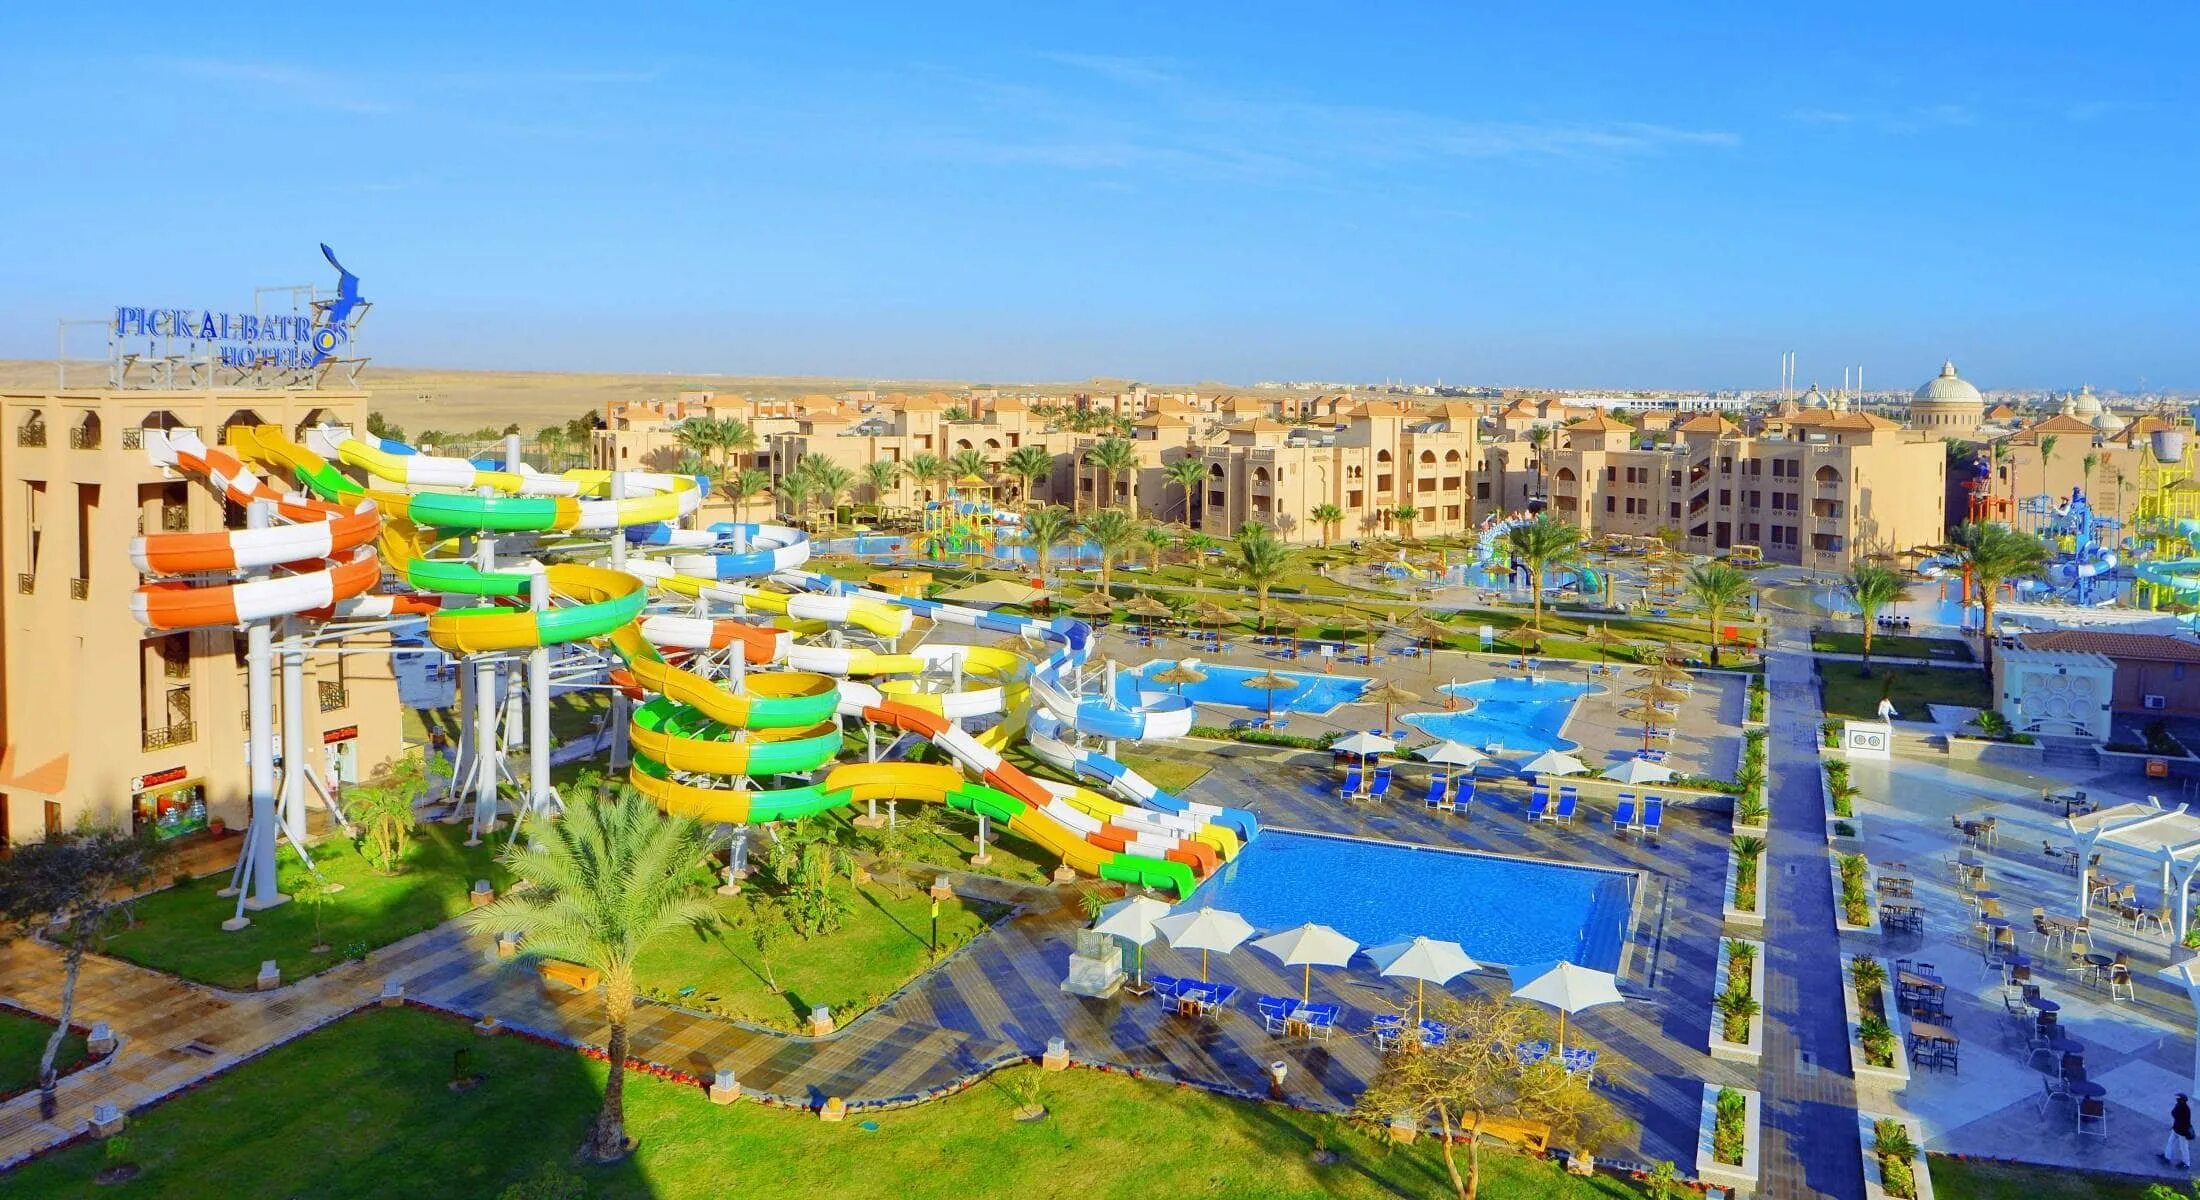 Египет Альбатрос Шарм-Эль-Шейх. Египет отель Альбатрос аквапарк. Аквапарк в Египте Шарм-Эль-Шейх. Пик Альбатрос Шарм-Эль-Шейх 5.